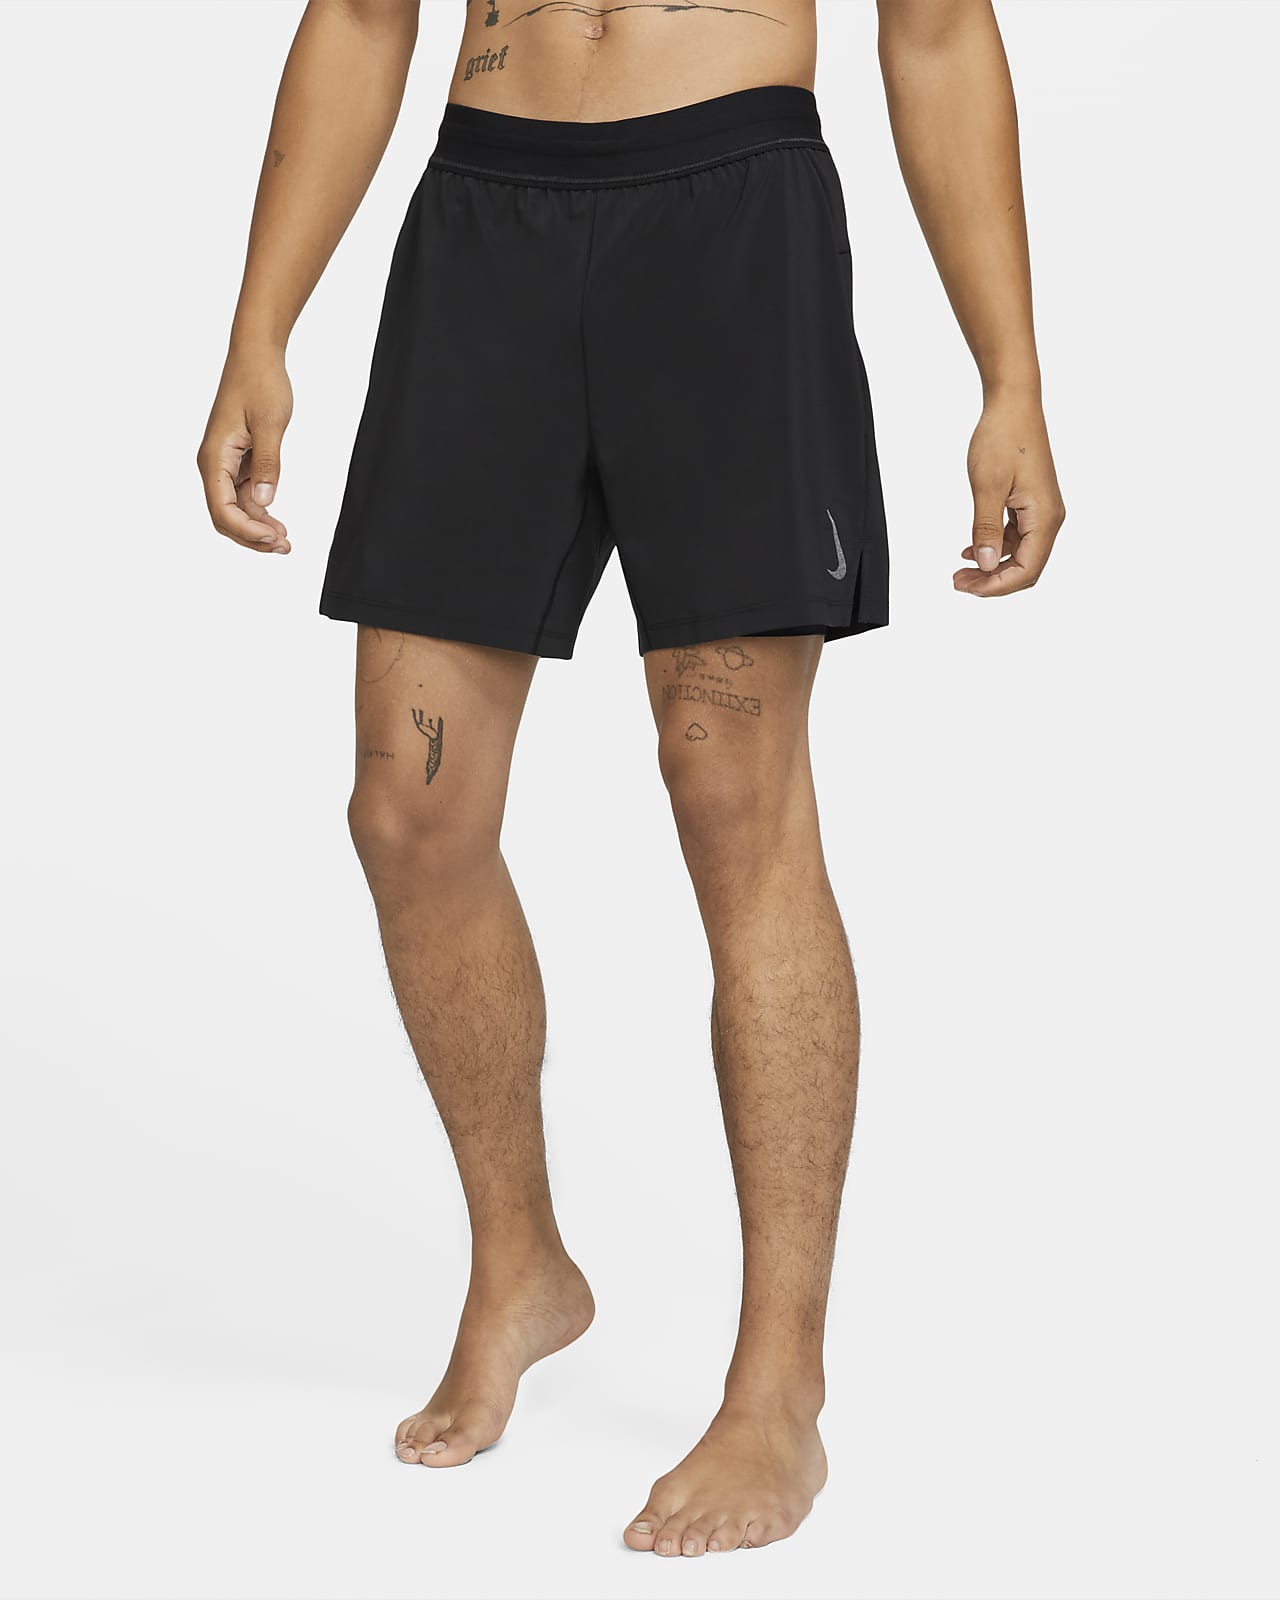 Nike Yoga Pantalón corto 2 en 1 - Hombre